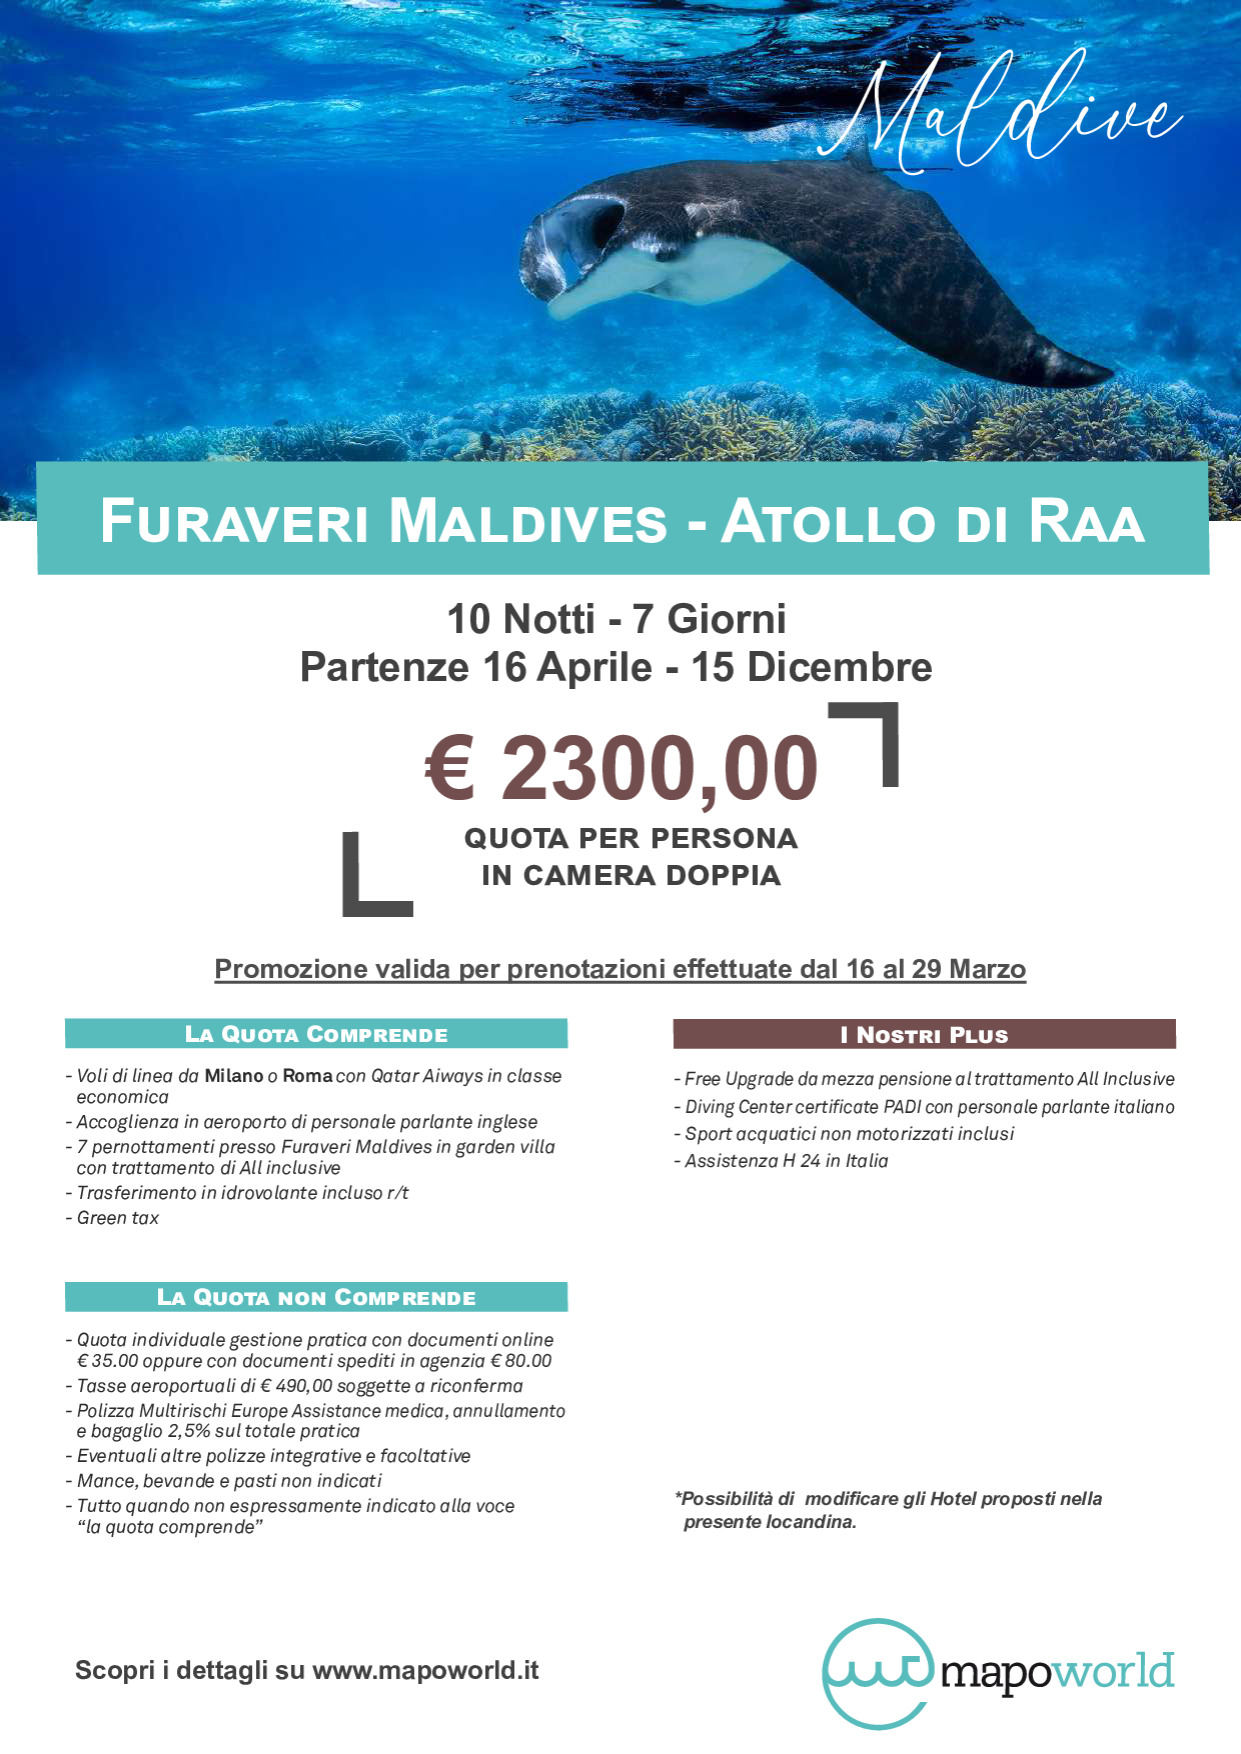 Furaveri Maldives - Atollo di Raa